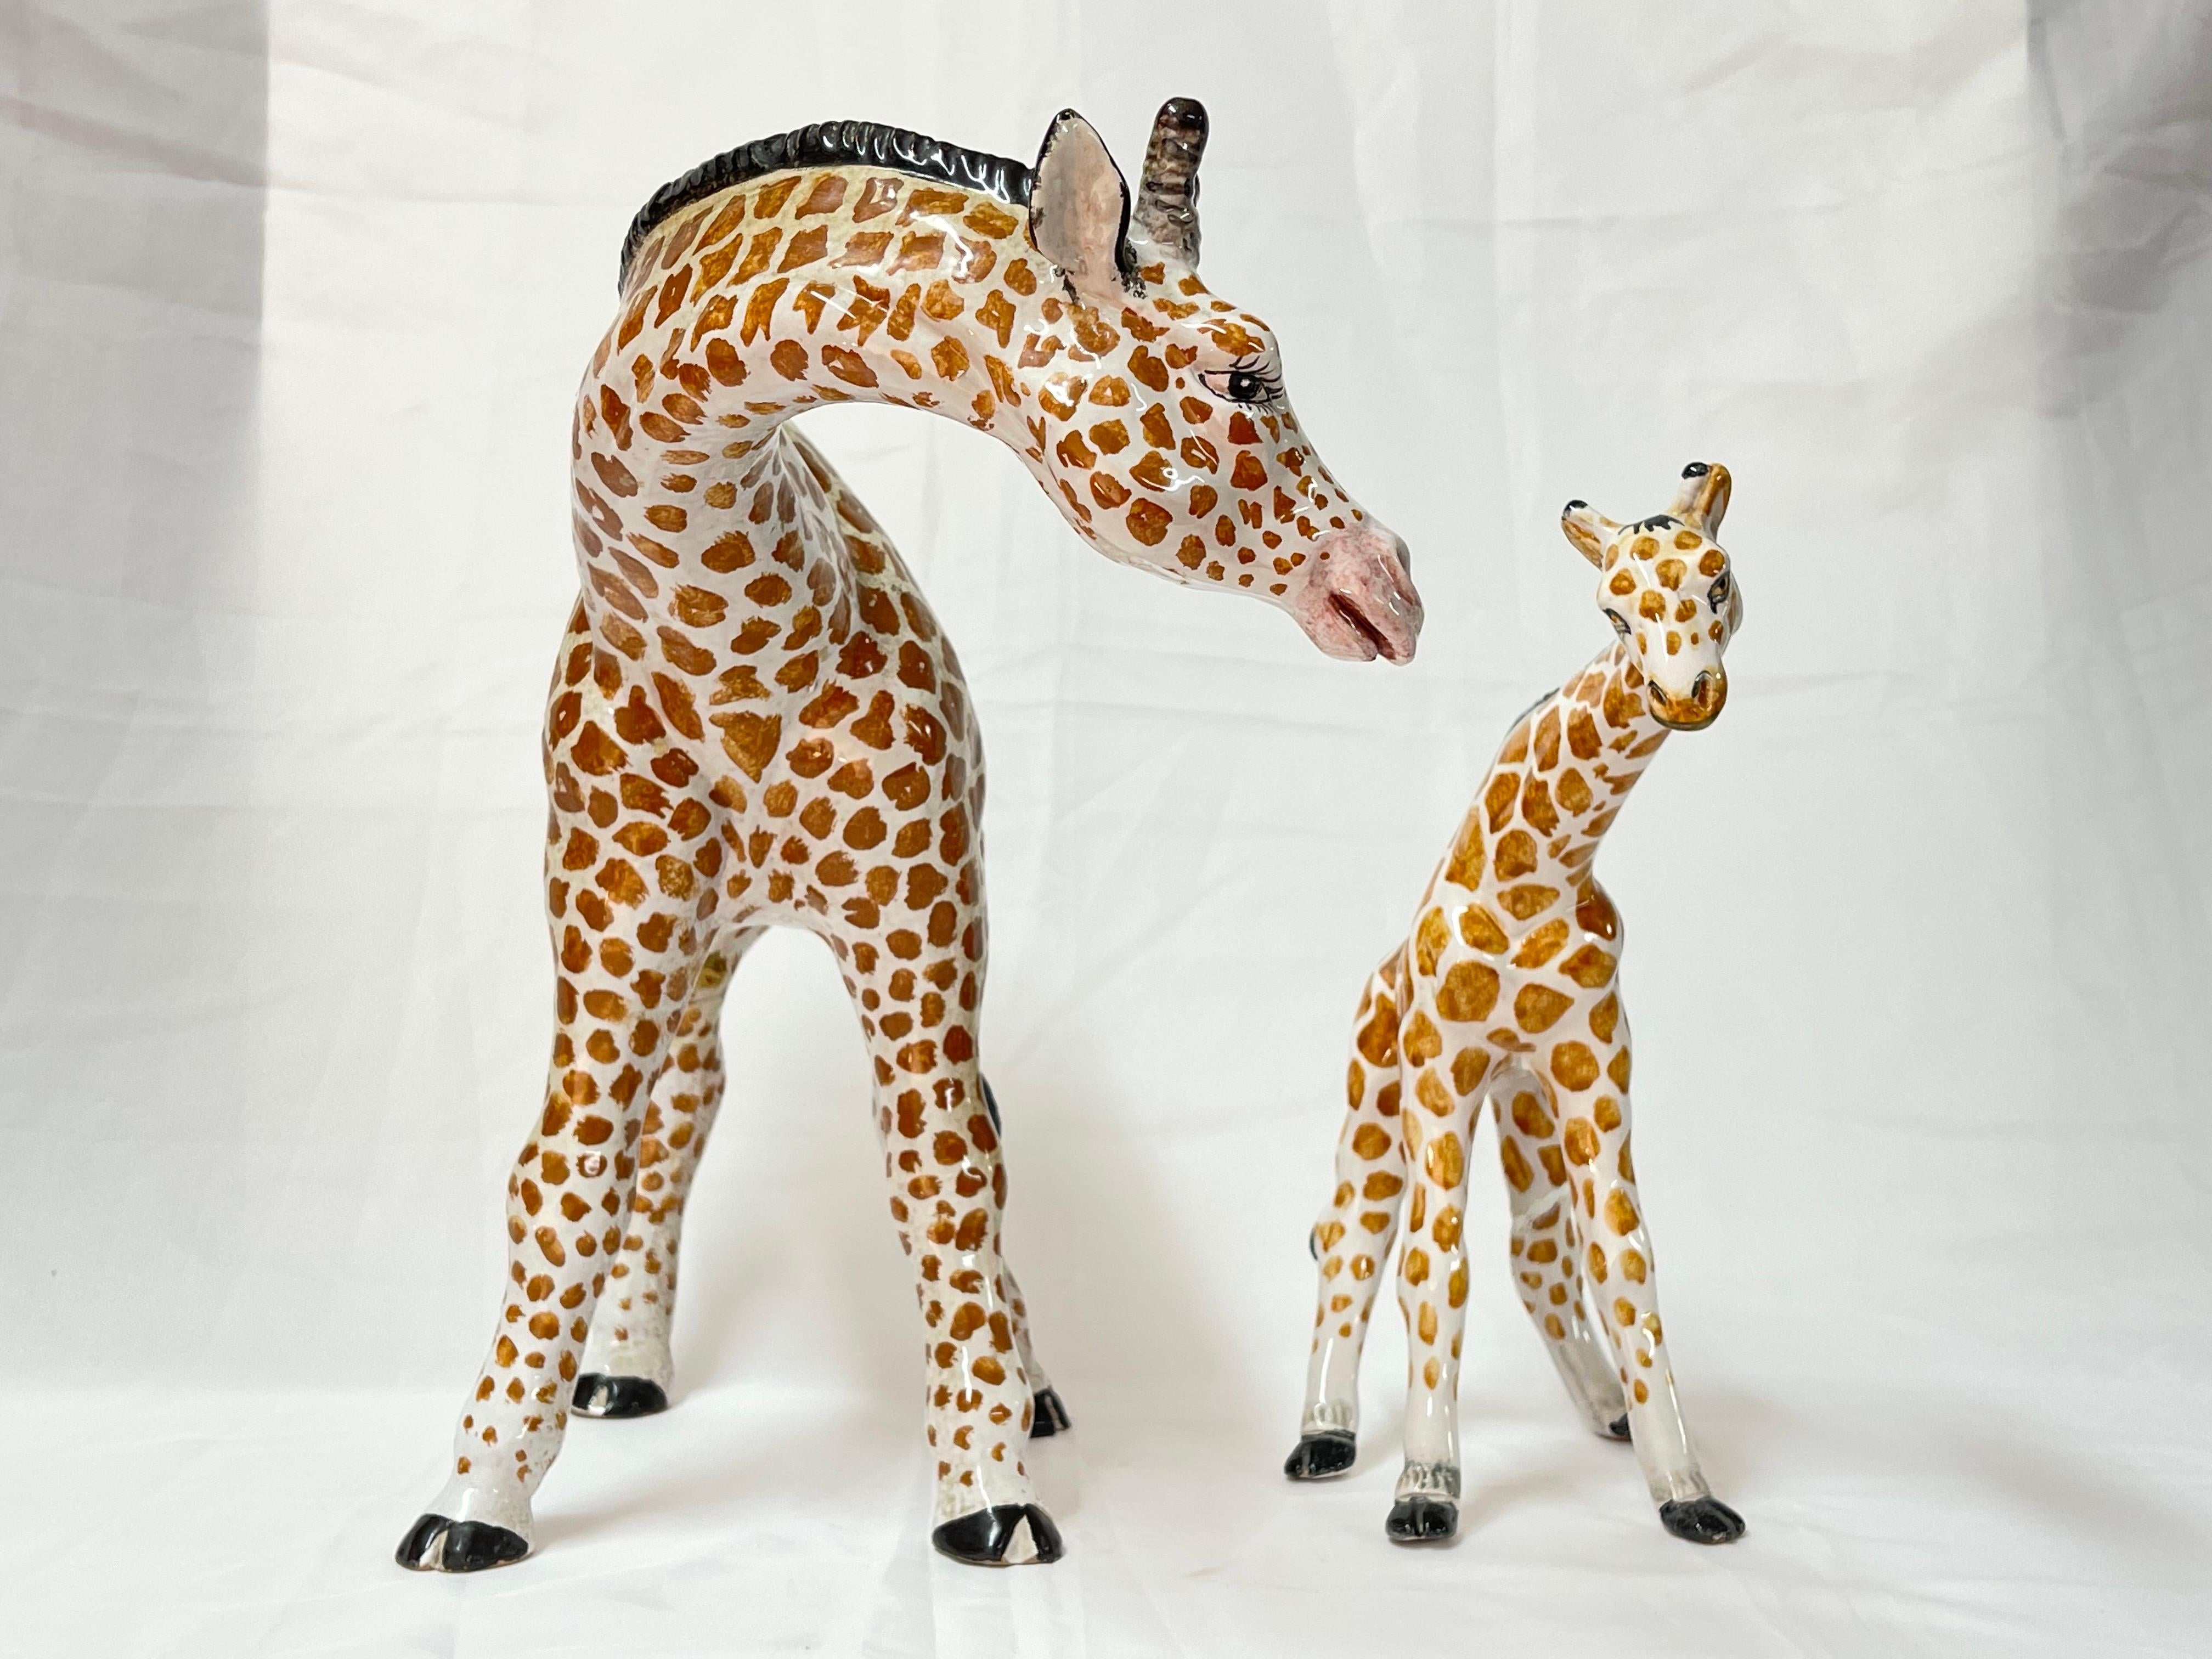 Paire de grandes girafes en céramique italienne des années 1970. Une mère et un bébé attachants.
La plus grande girafe mesure approximativement : 14.25